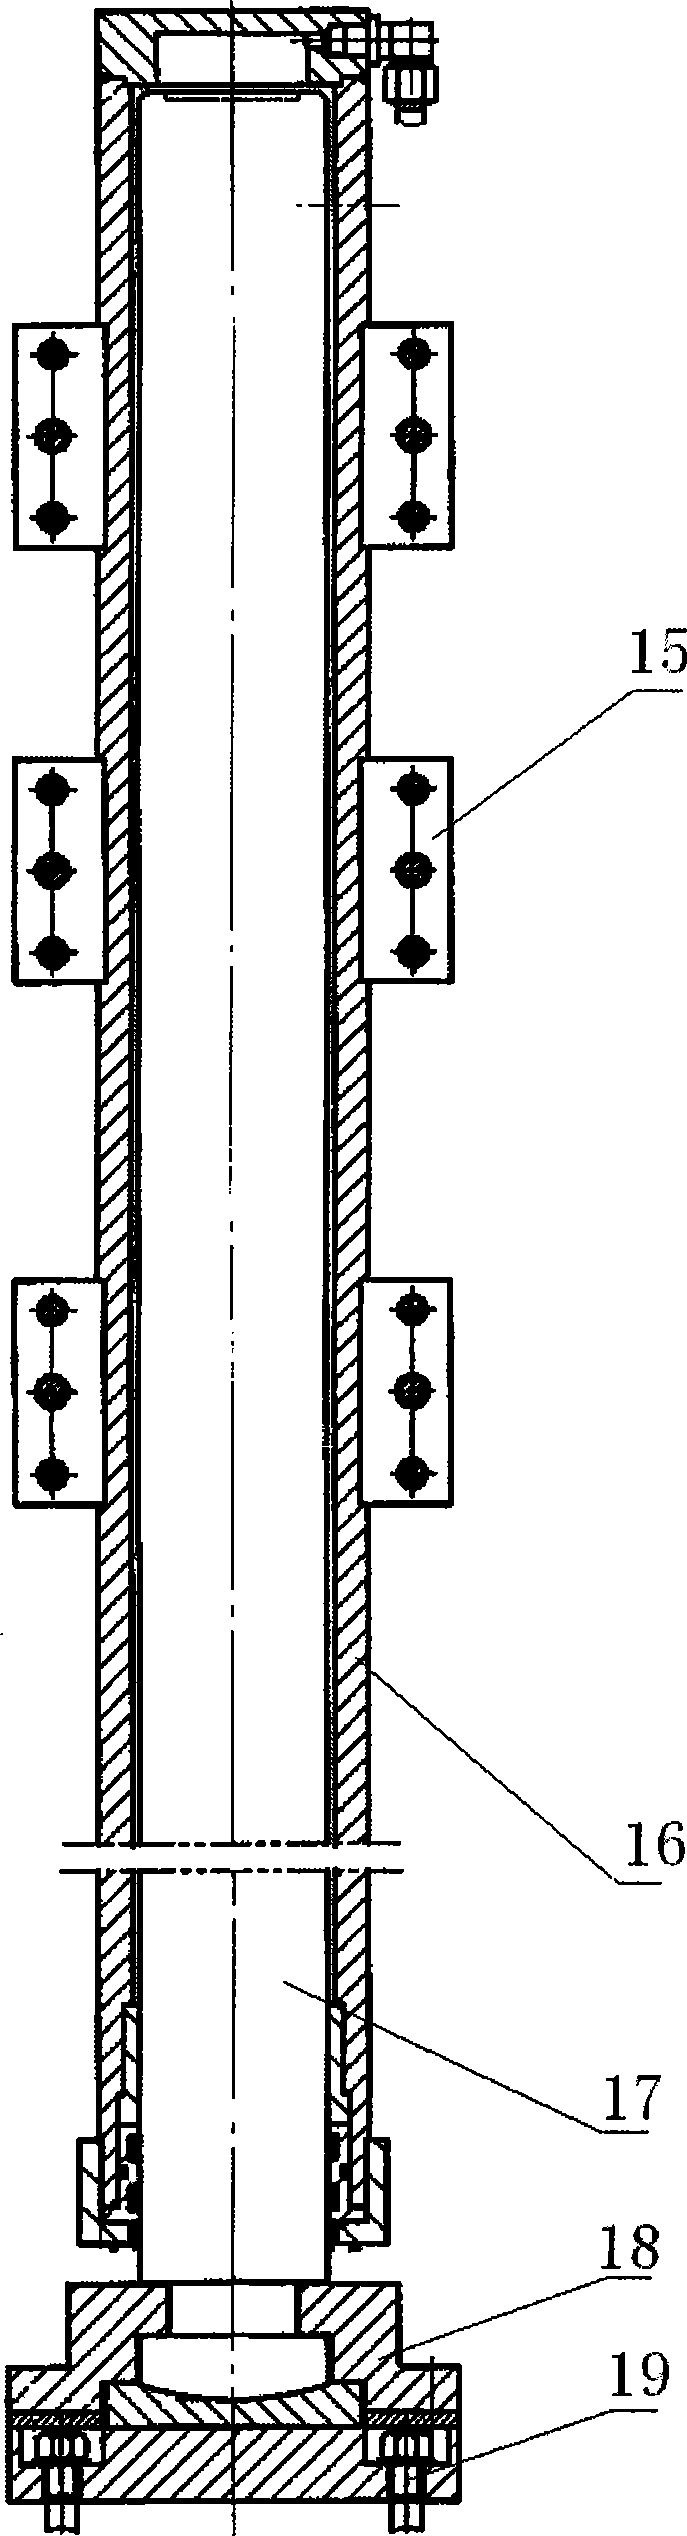 Double column vertical lathe